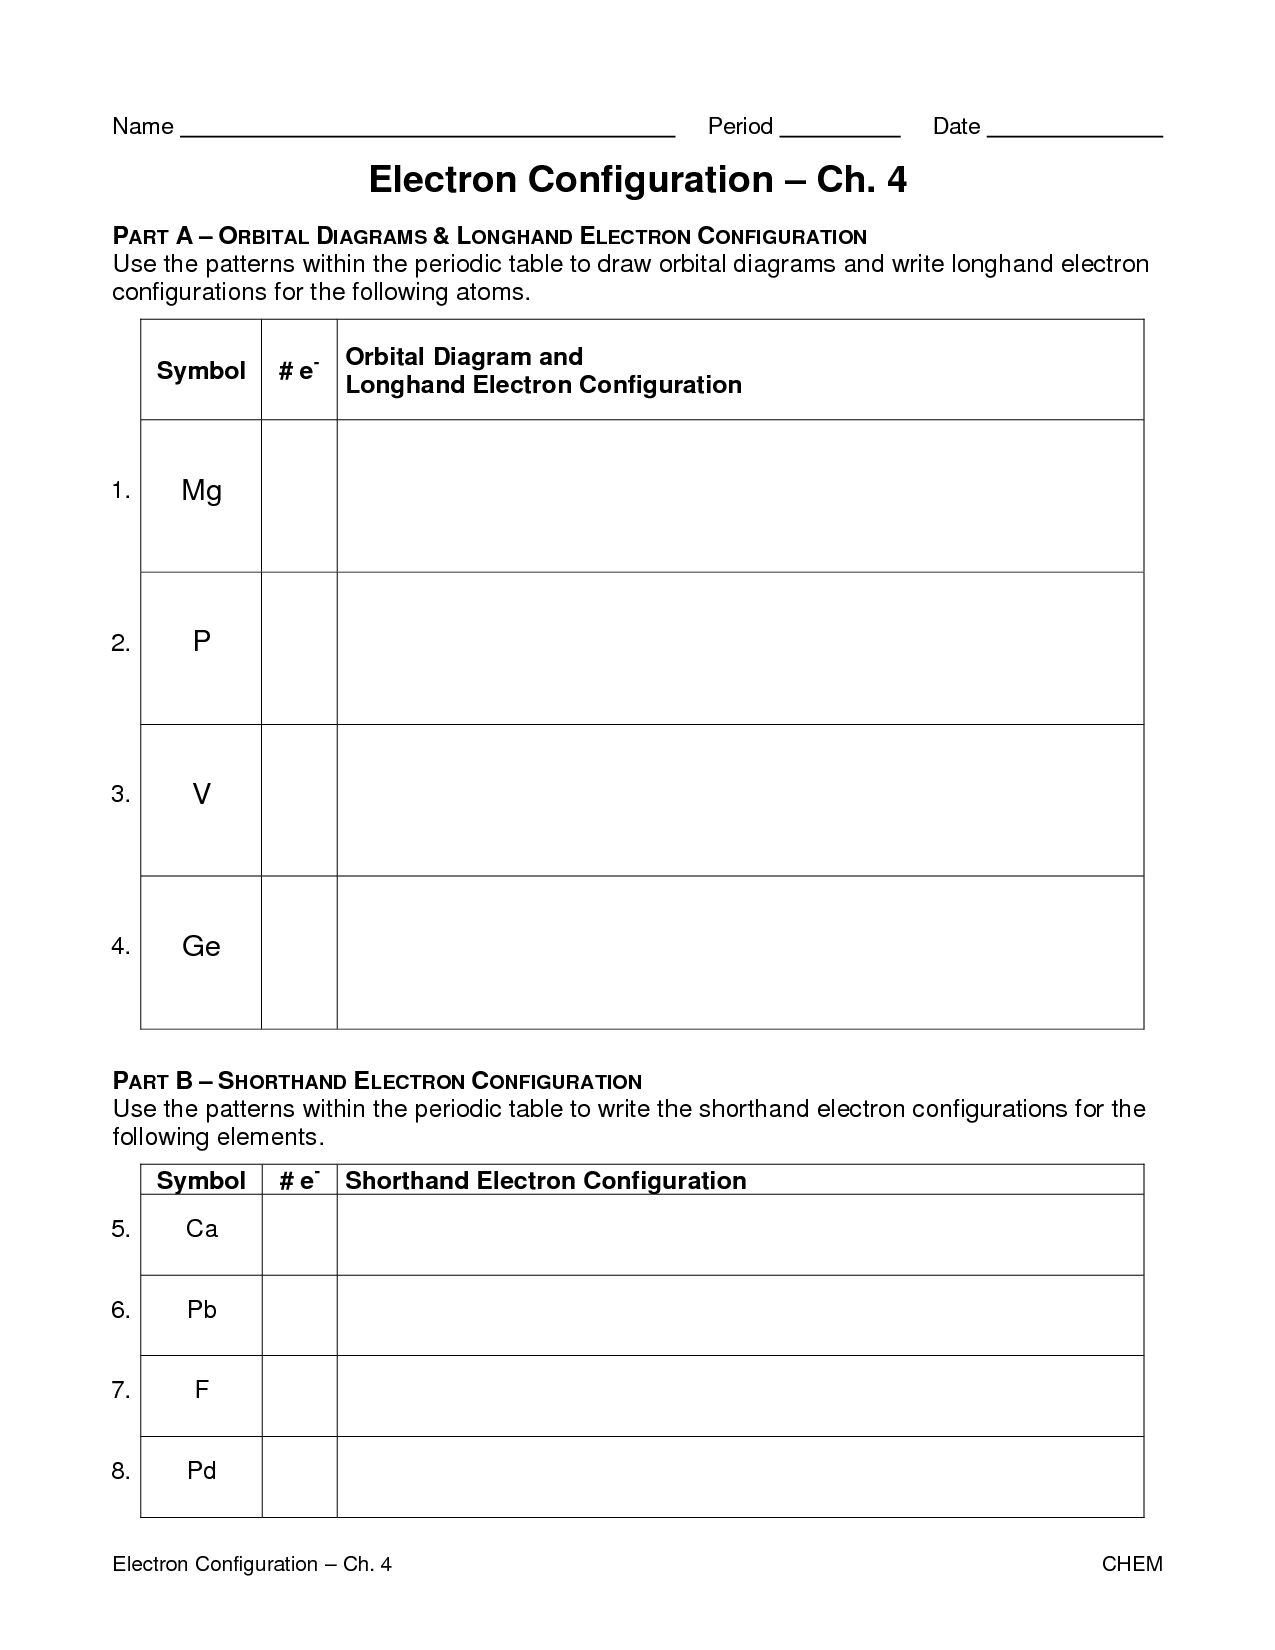 Electron Configuration Worksheet Answer Key